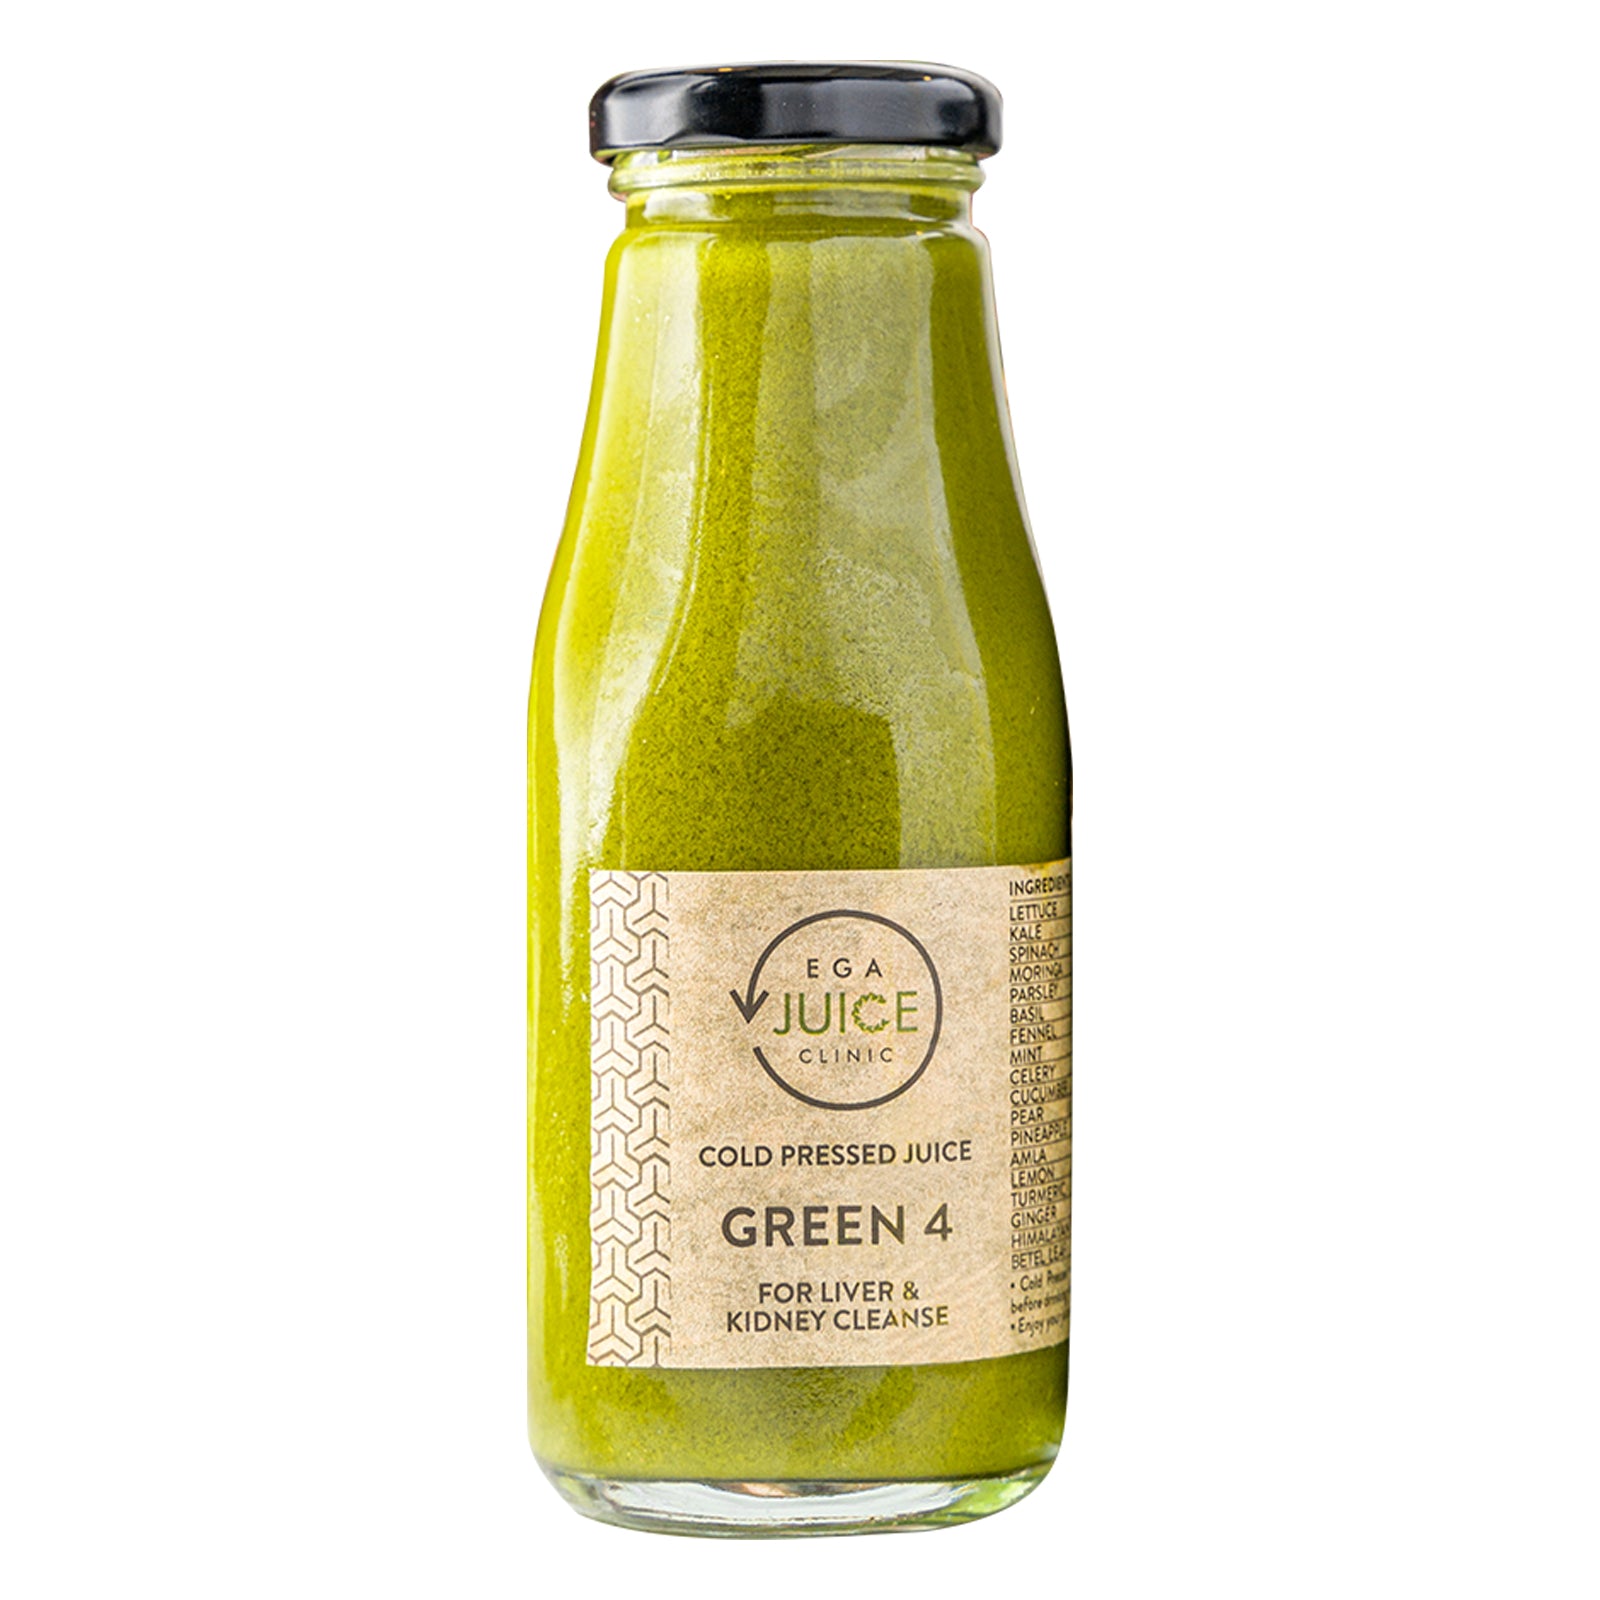 Green 4 juice bottle